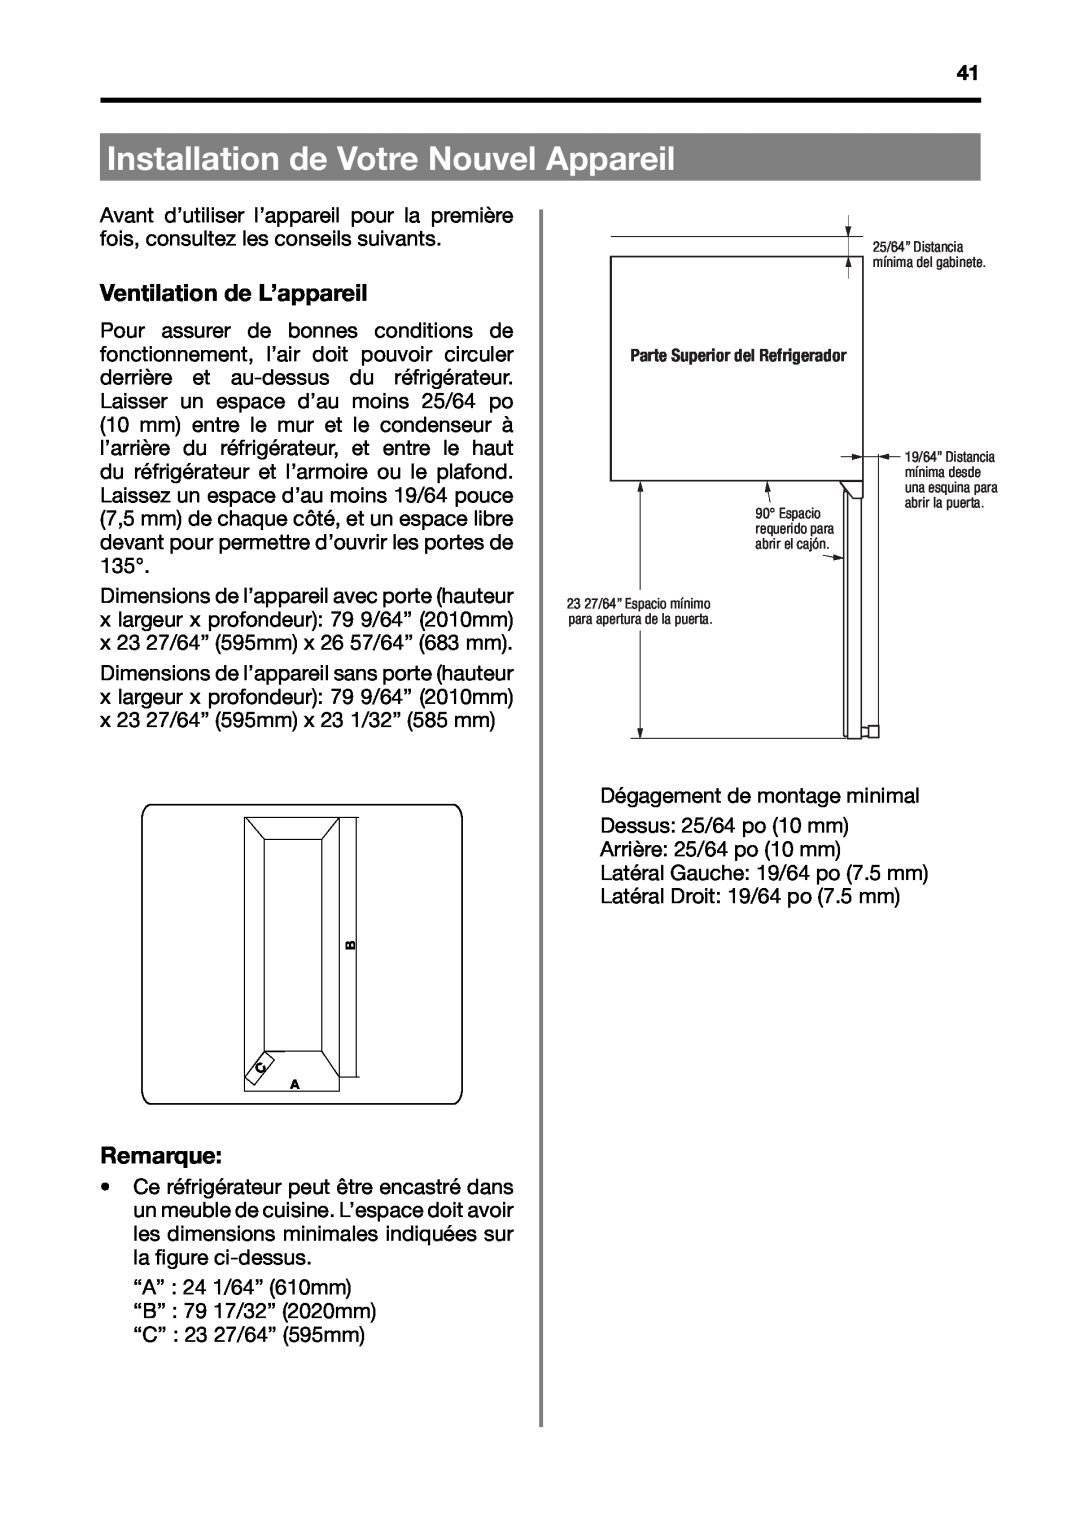 Fagor America BMF-200X manual Installation de Votre Nouvel Appareil, Ventilation de L’appareil, Remarque 